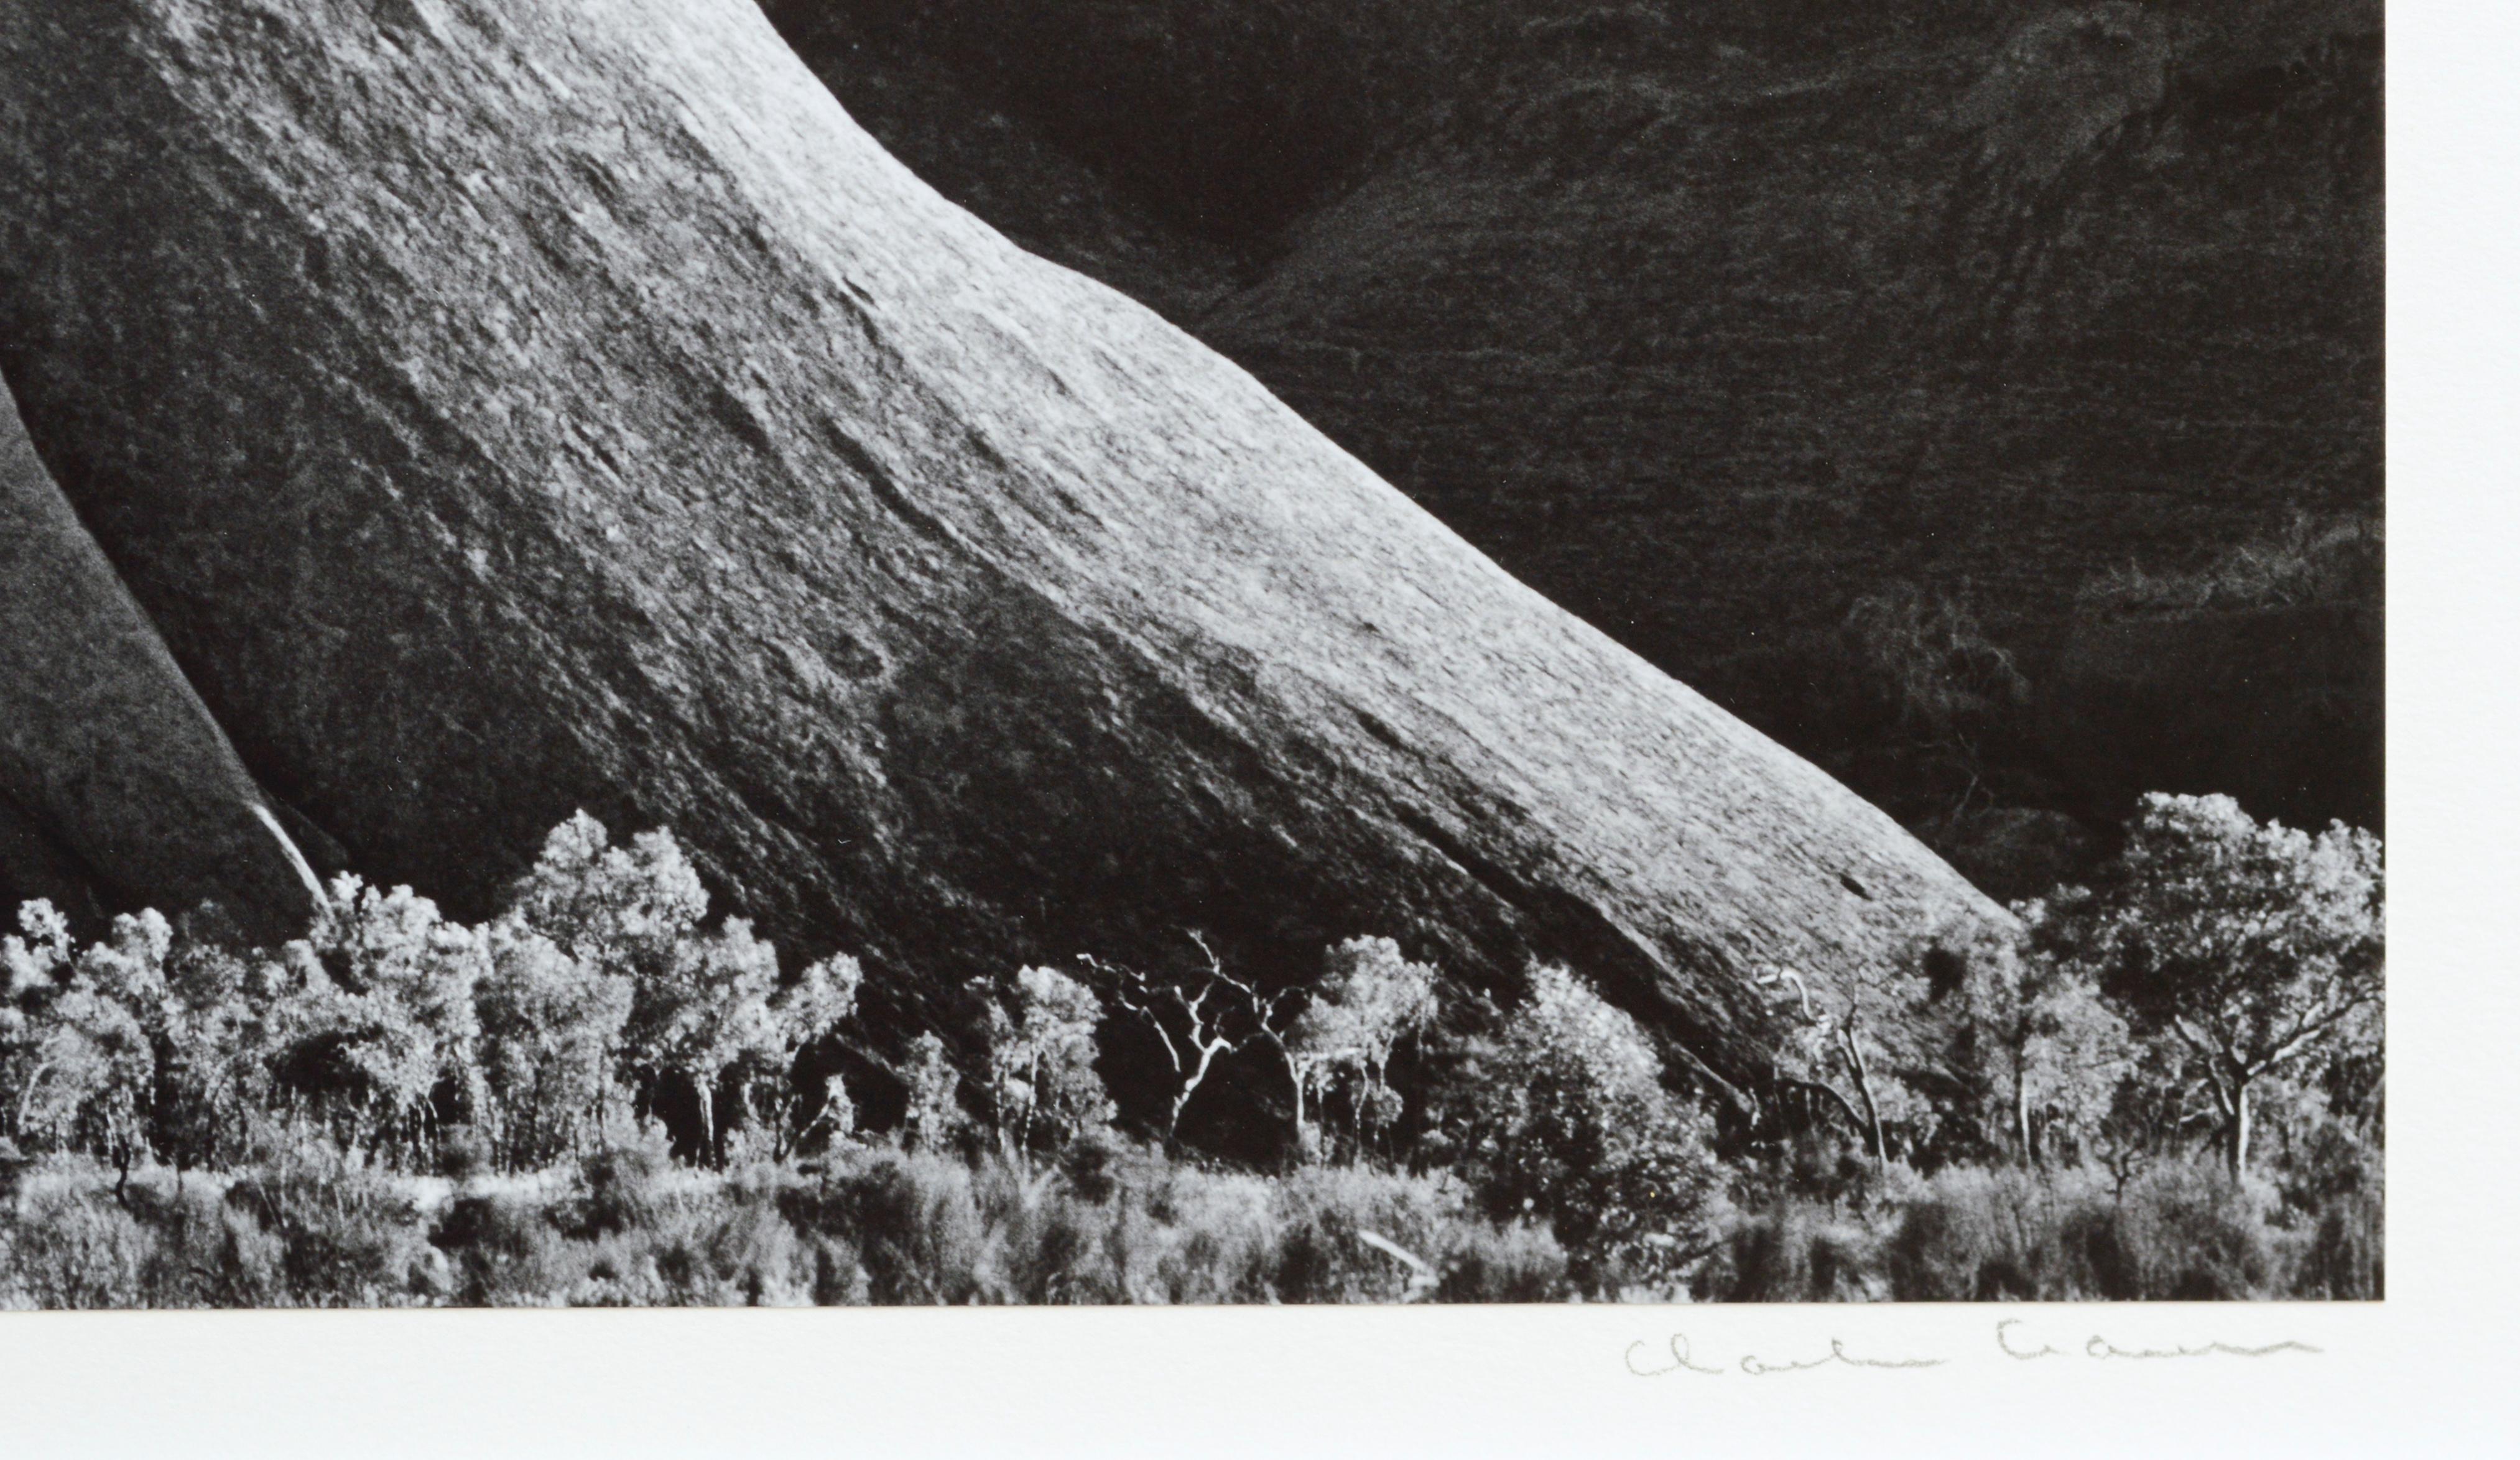 Betrachten Sie die atemberaubende Schönheit der Natur auf dieser handsignierten Schwarz-Weiß-Landschaftsfotografie des wunderschönen Ayers Rock in Australien. Charles Cramer (Amerikaner, geb. 1950) zeigt die elegante Krümmung der dramatischen Klippe